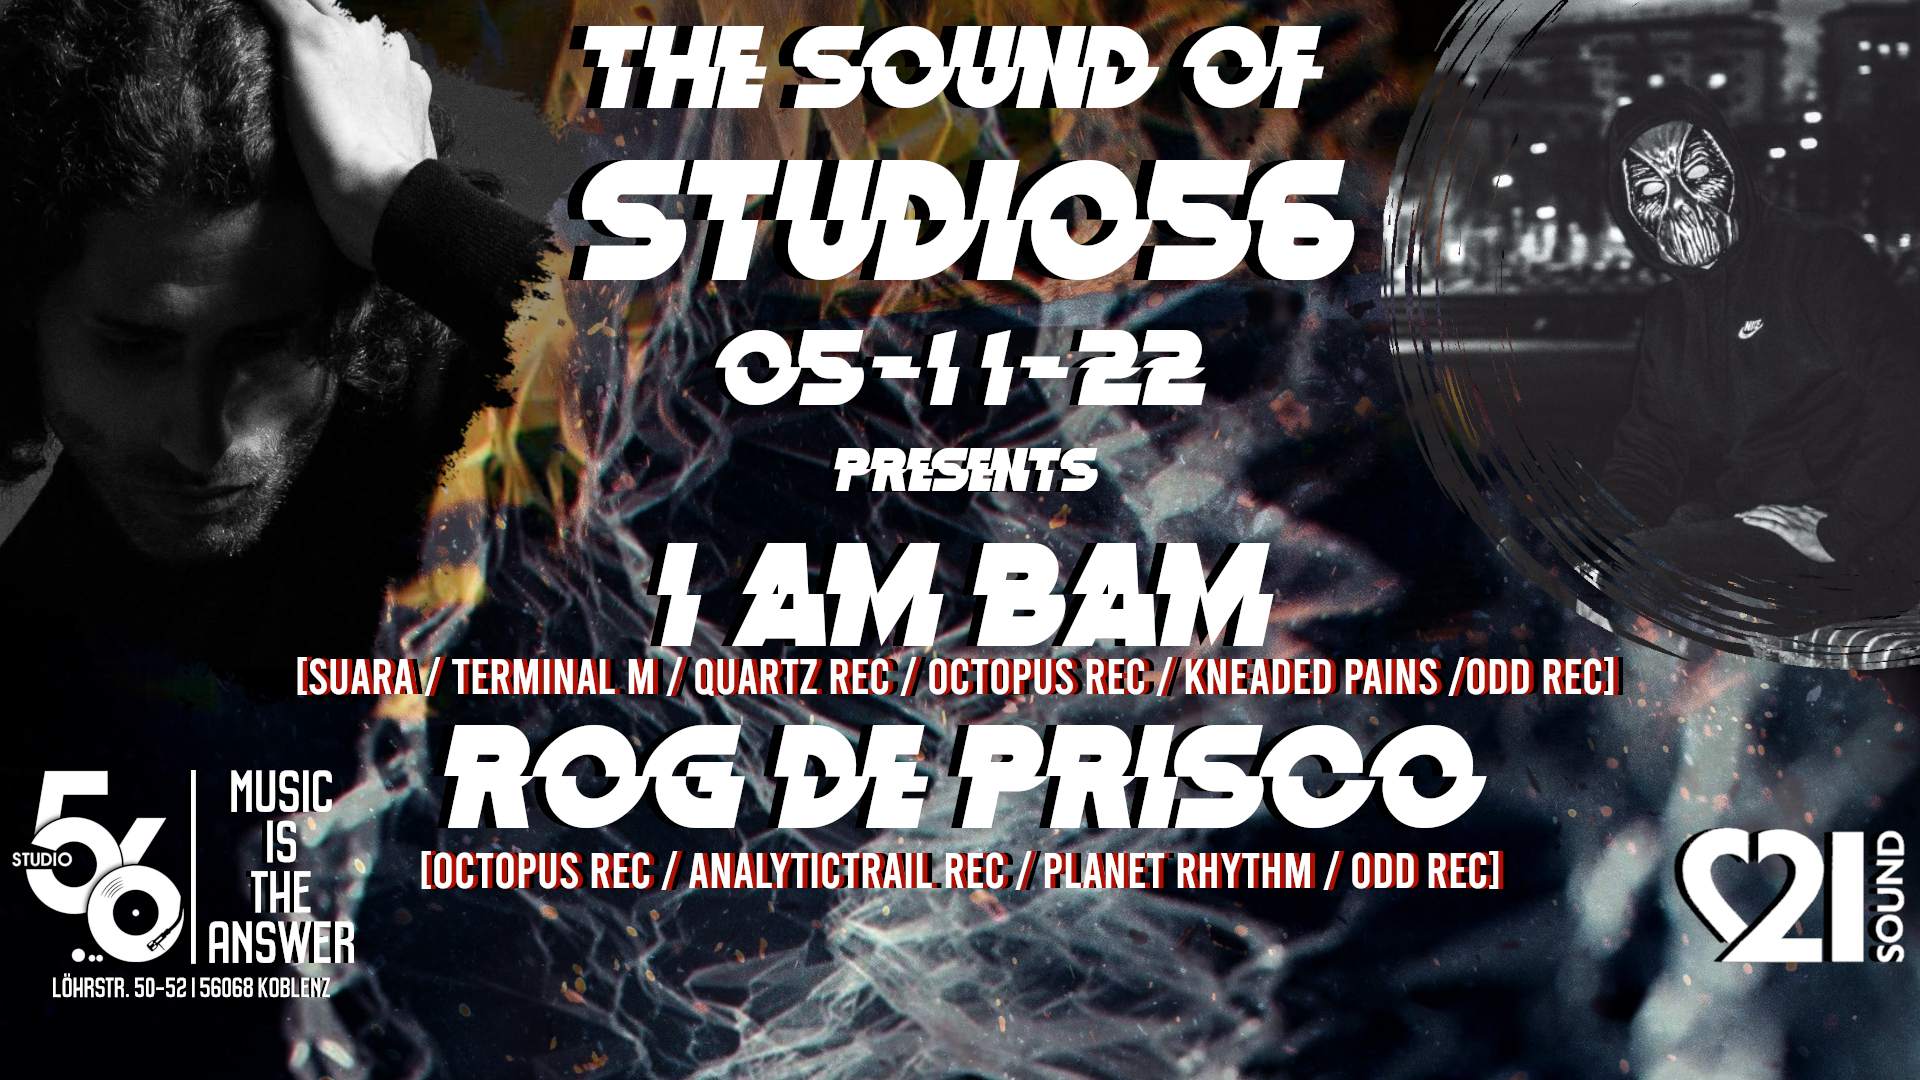 The Sound of Studio56 with I AM BAM & Rog De Prisco - フライヤー表